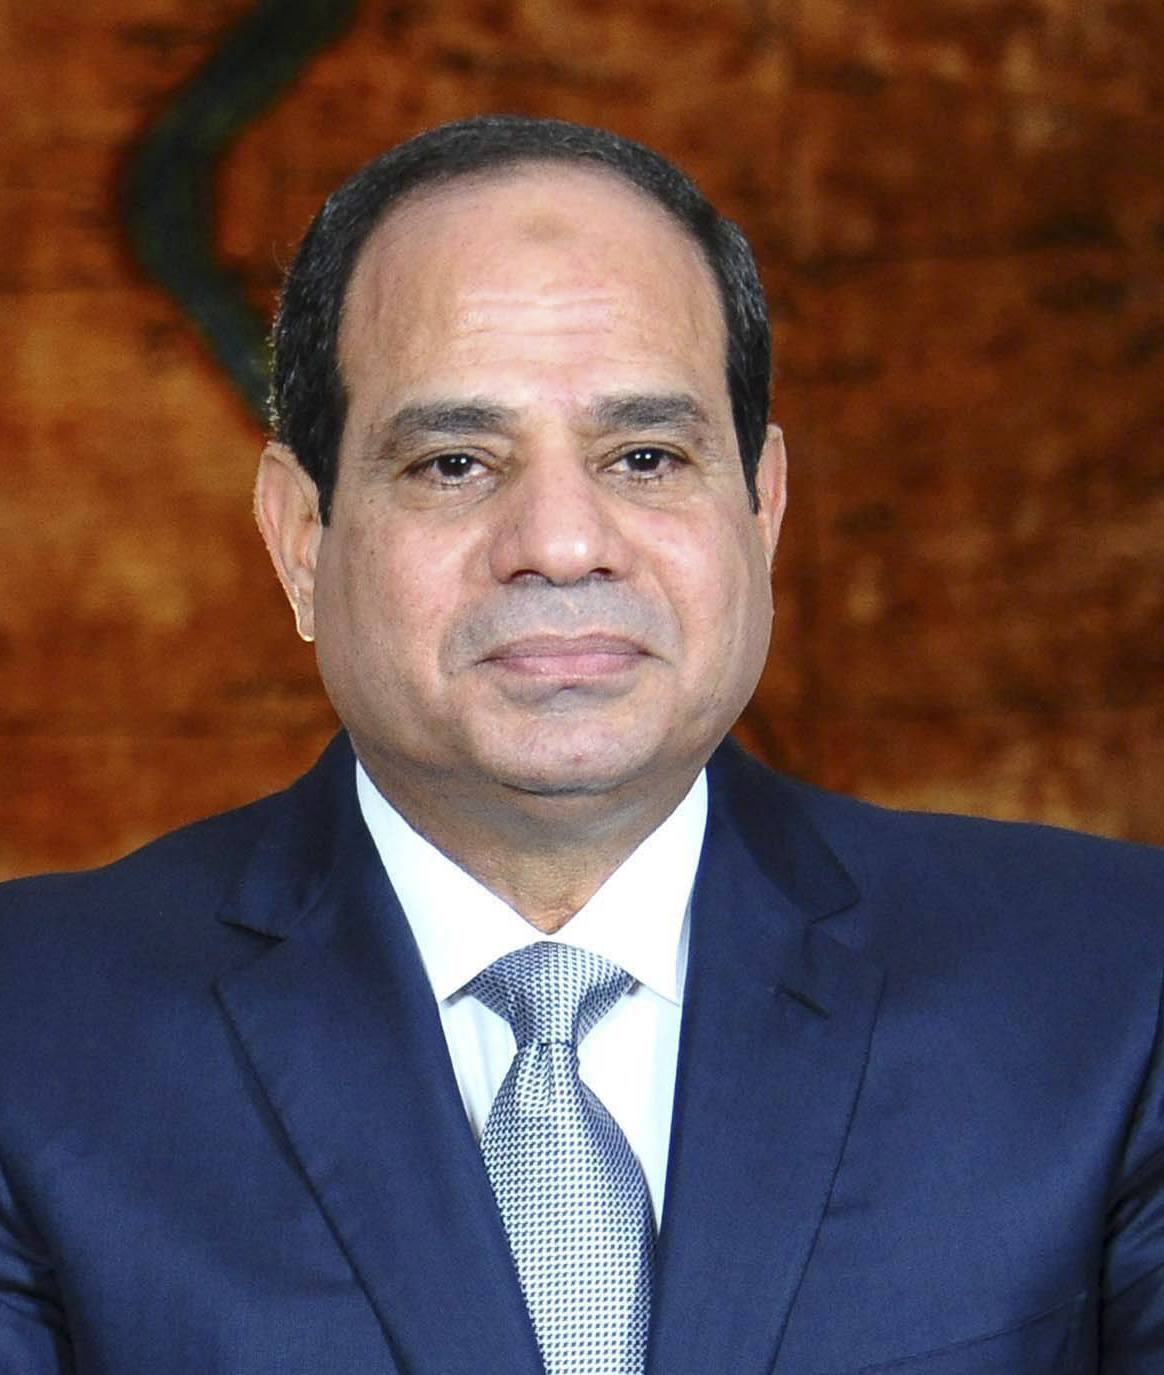 Egyptian President Abdelfatah Al-Sisi